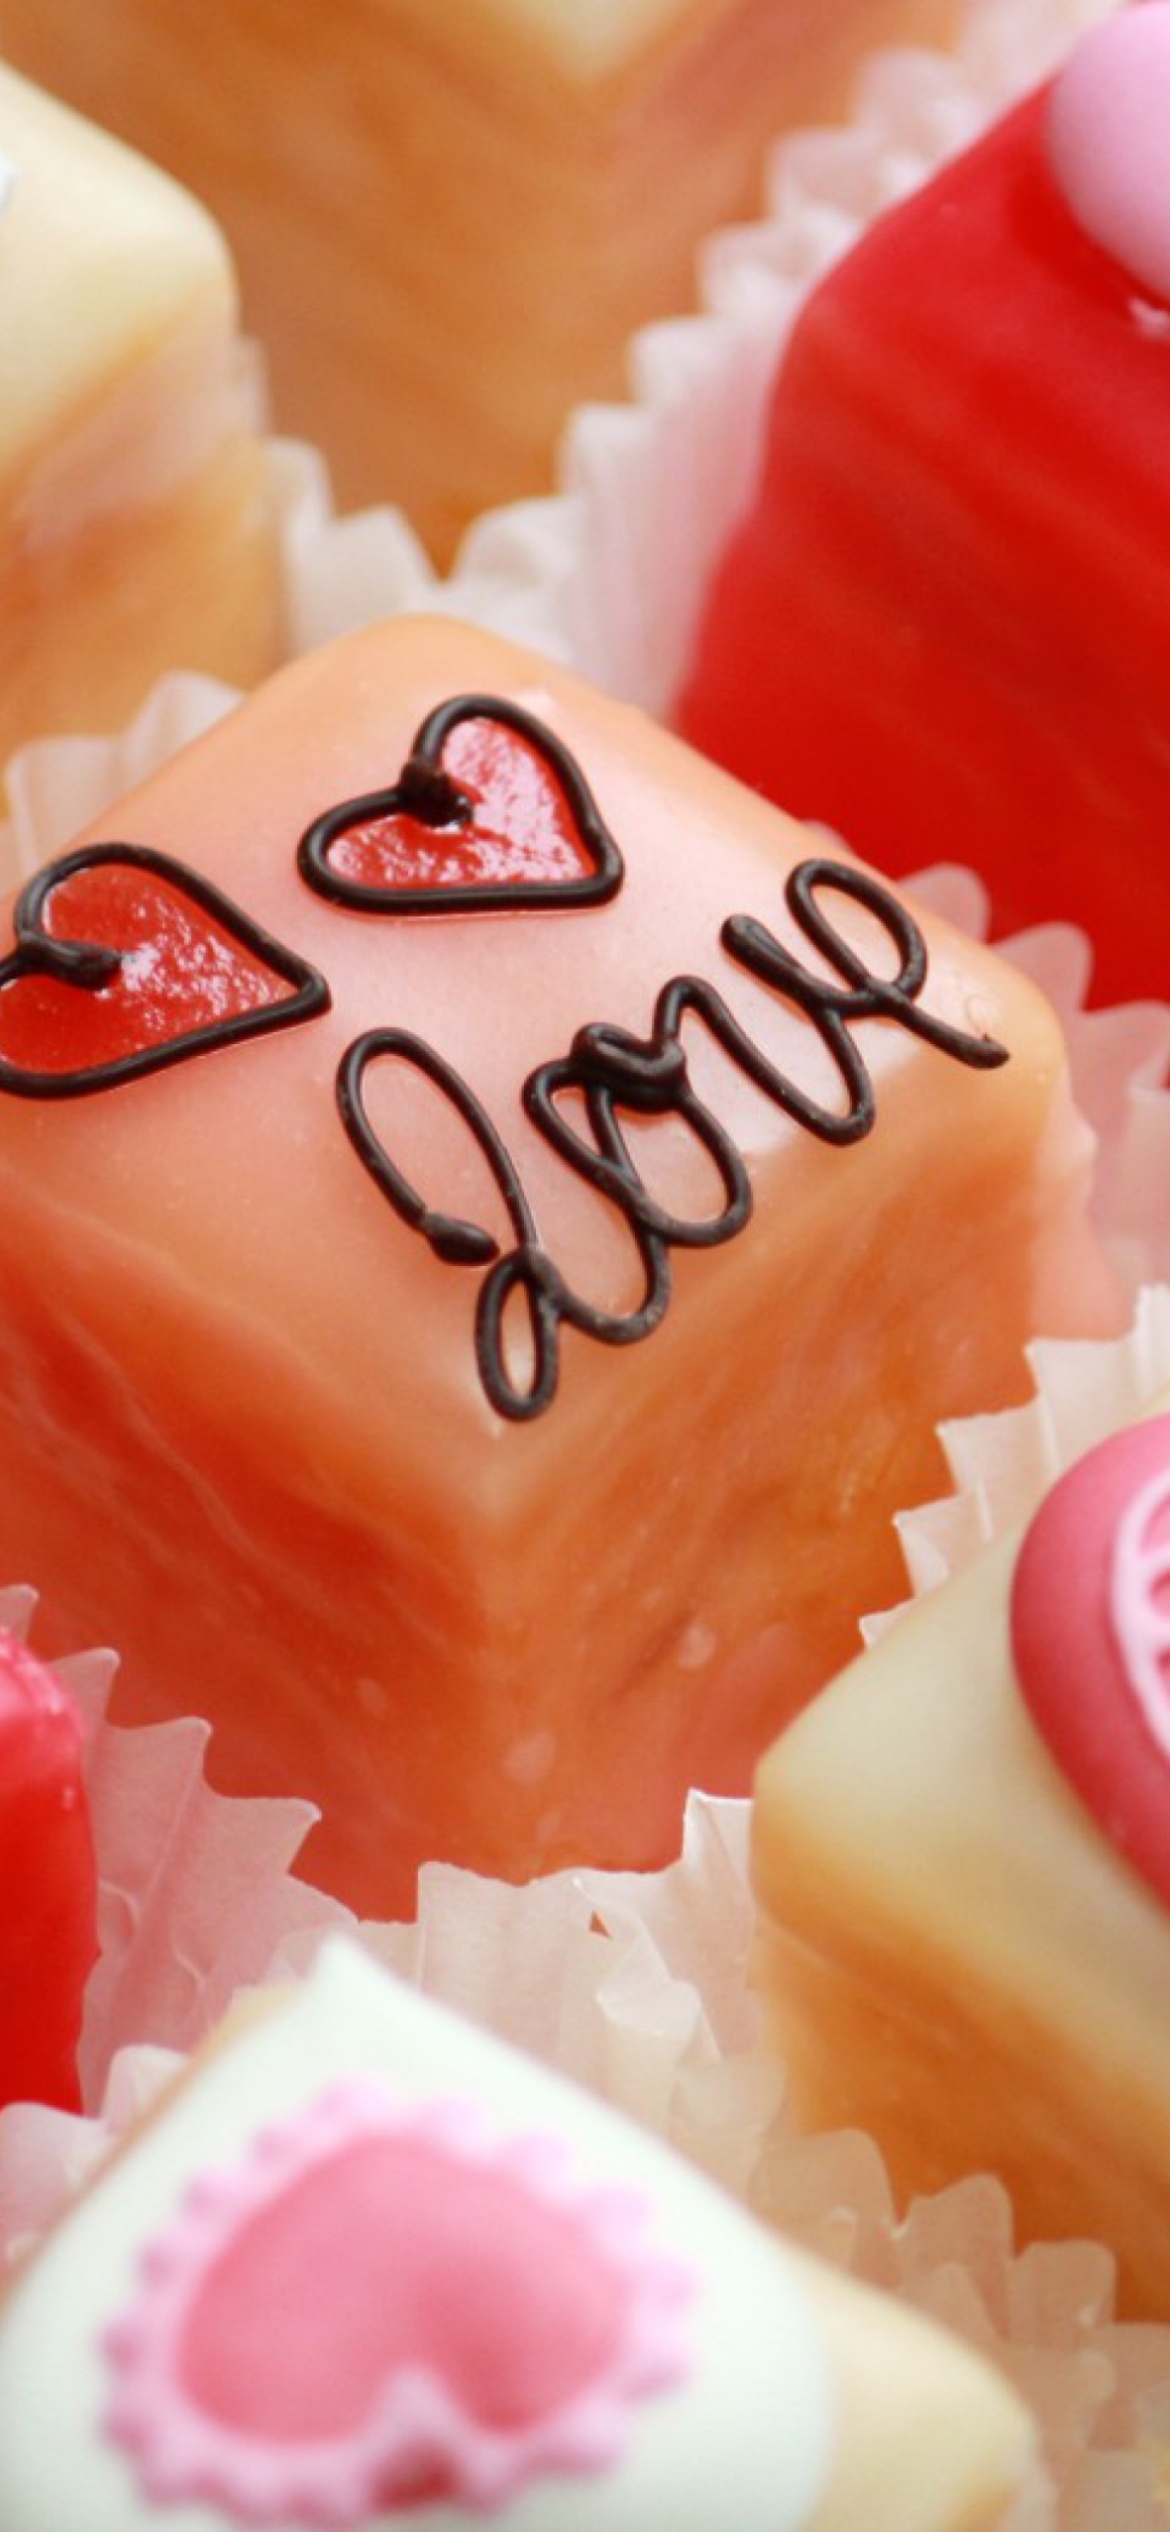 Обои Love Cupcakes 1170x2532